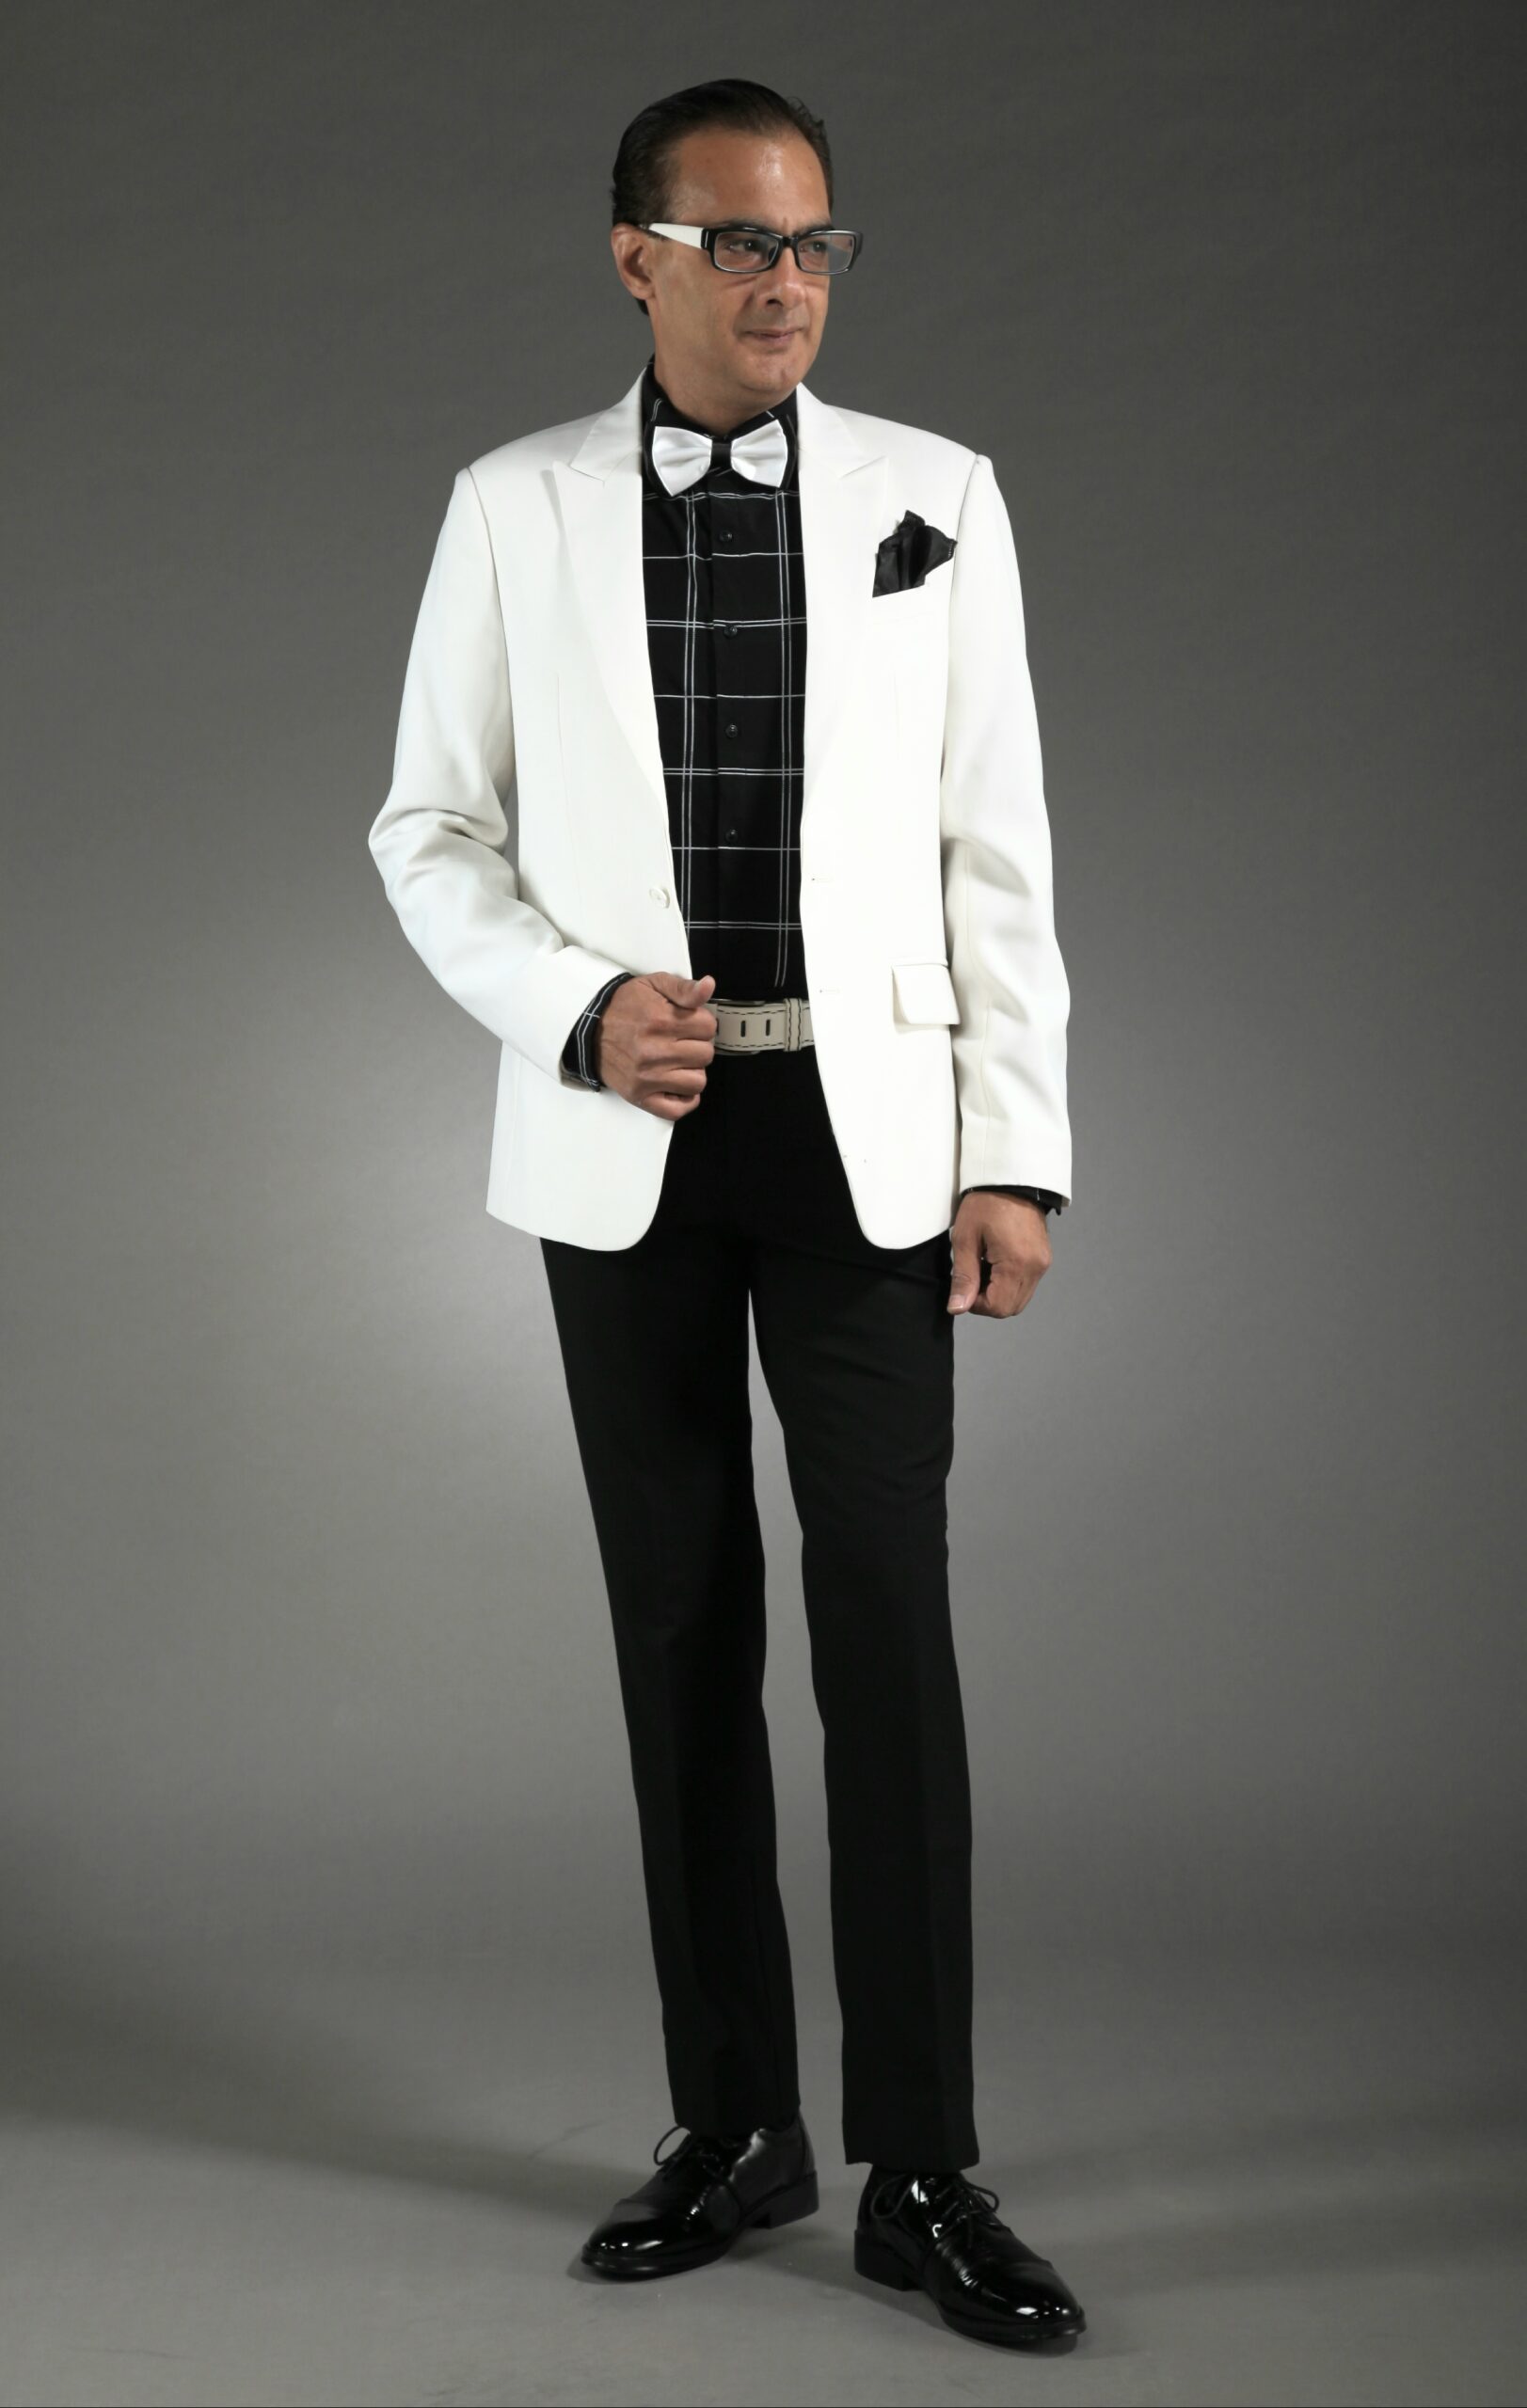 MST-5055-02-rent_rental_hire_tuxedo_suit_black_tie_suit_designer_suits_shop_tailor_tailors_singapore_wedding